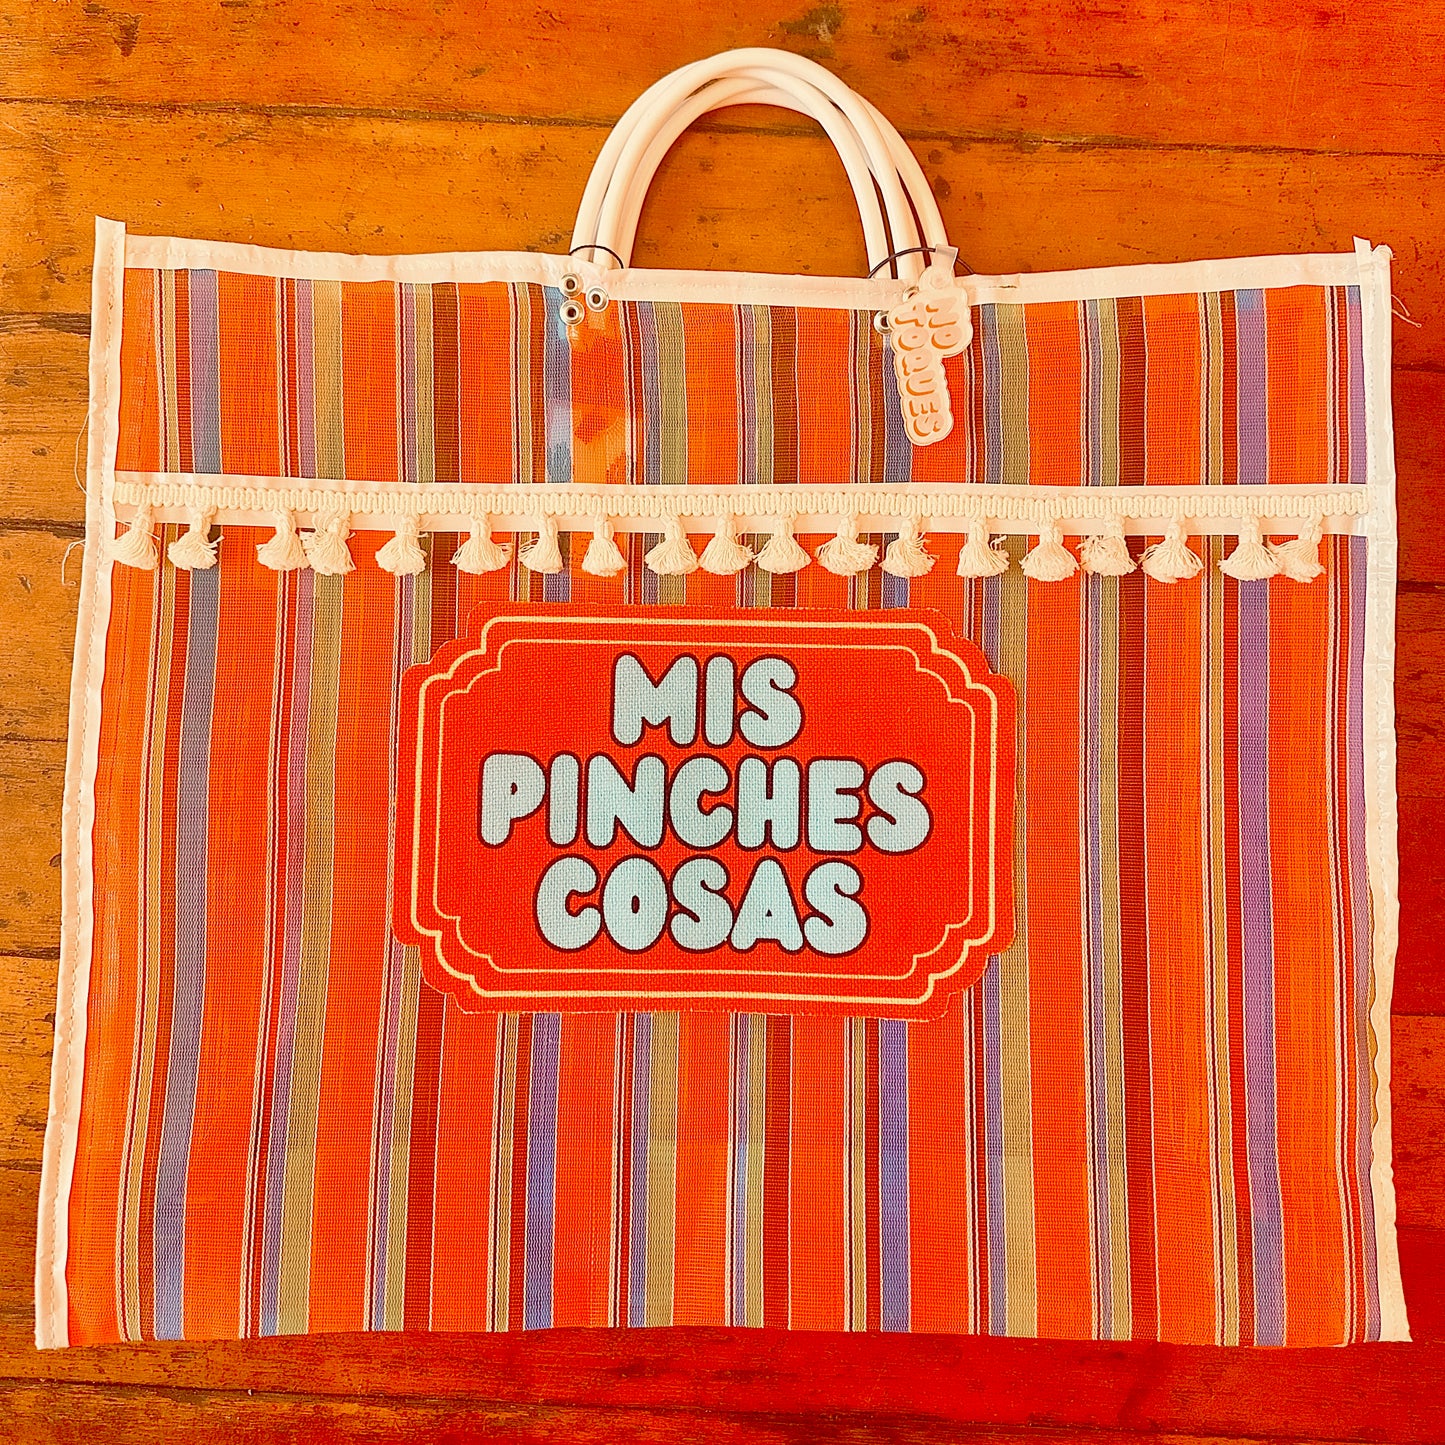 Mis Pinches Cosas Mercado Bag